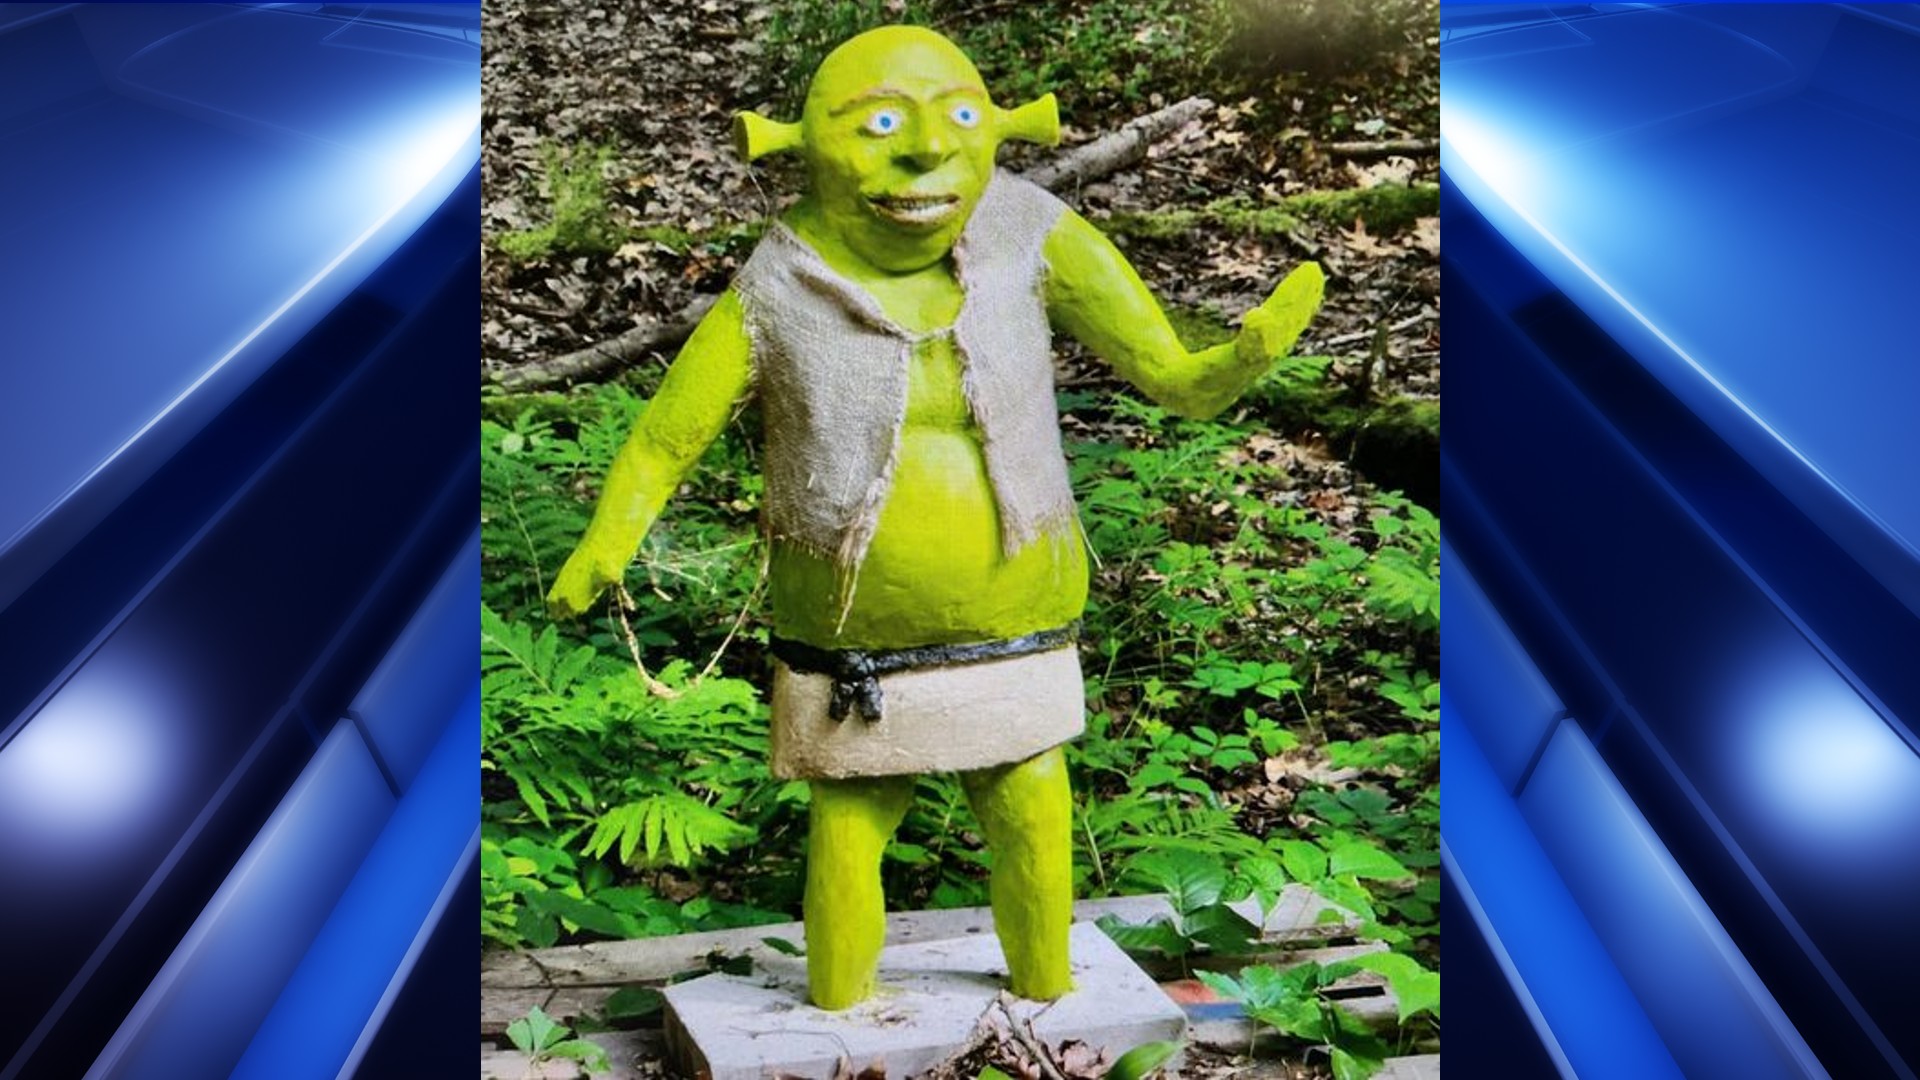 A man was found guilty of stealing a Shrek statue from a garden. - Shrek